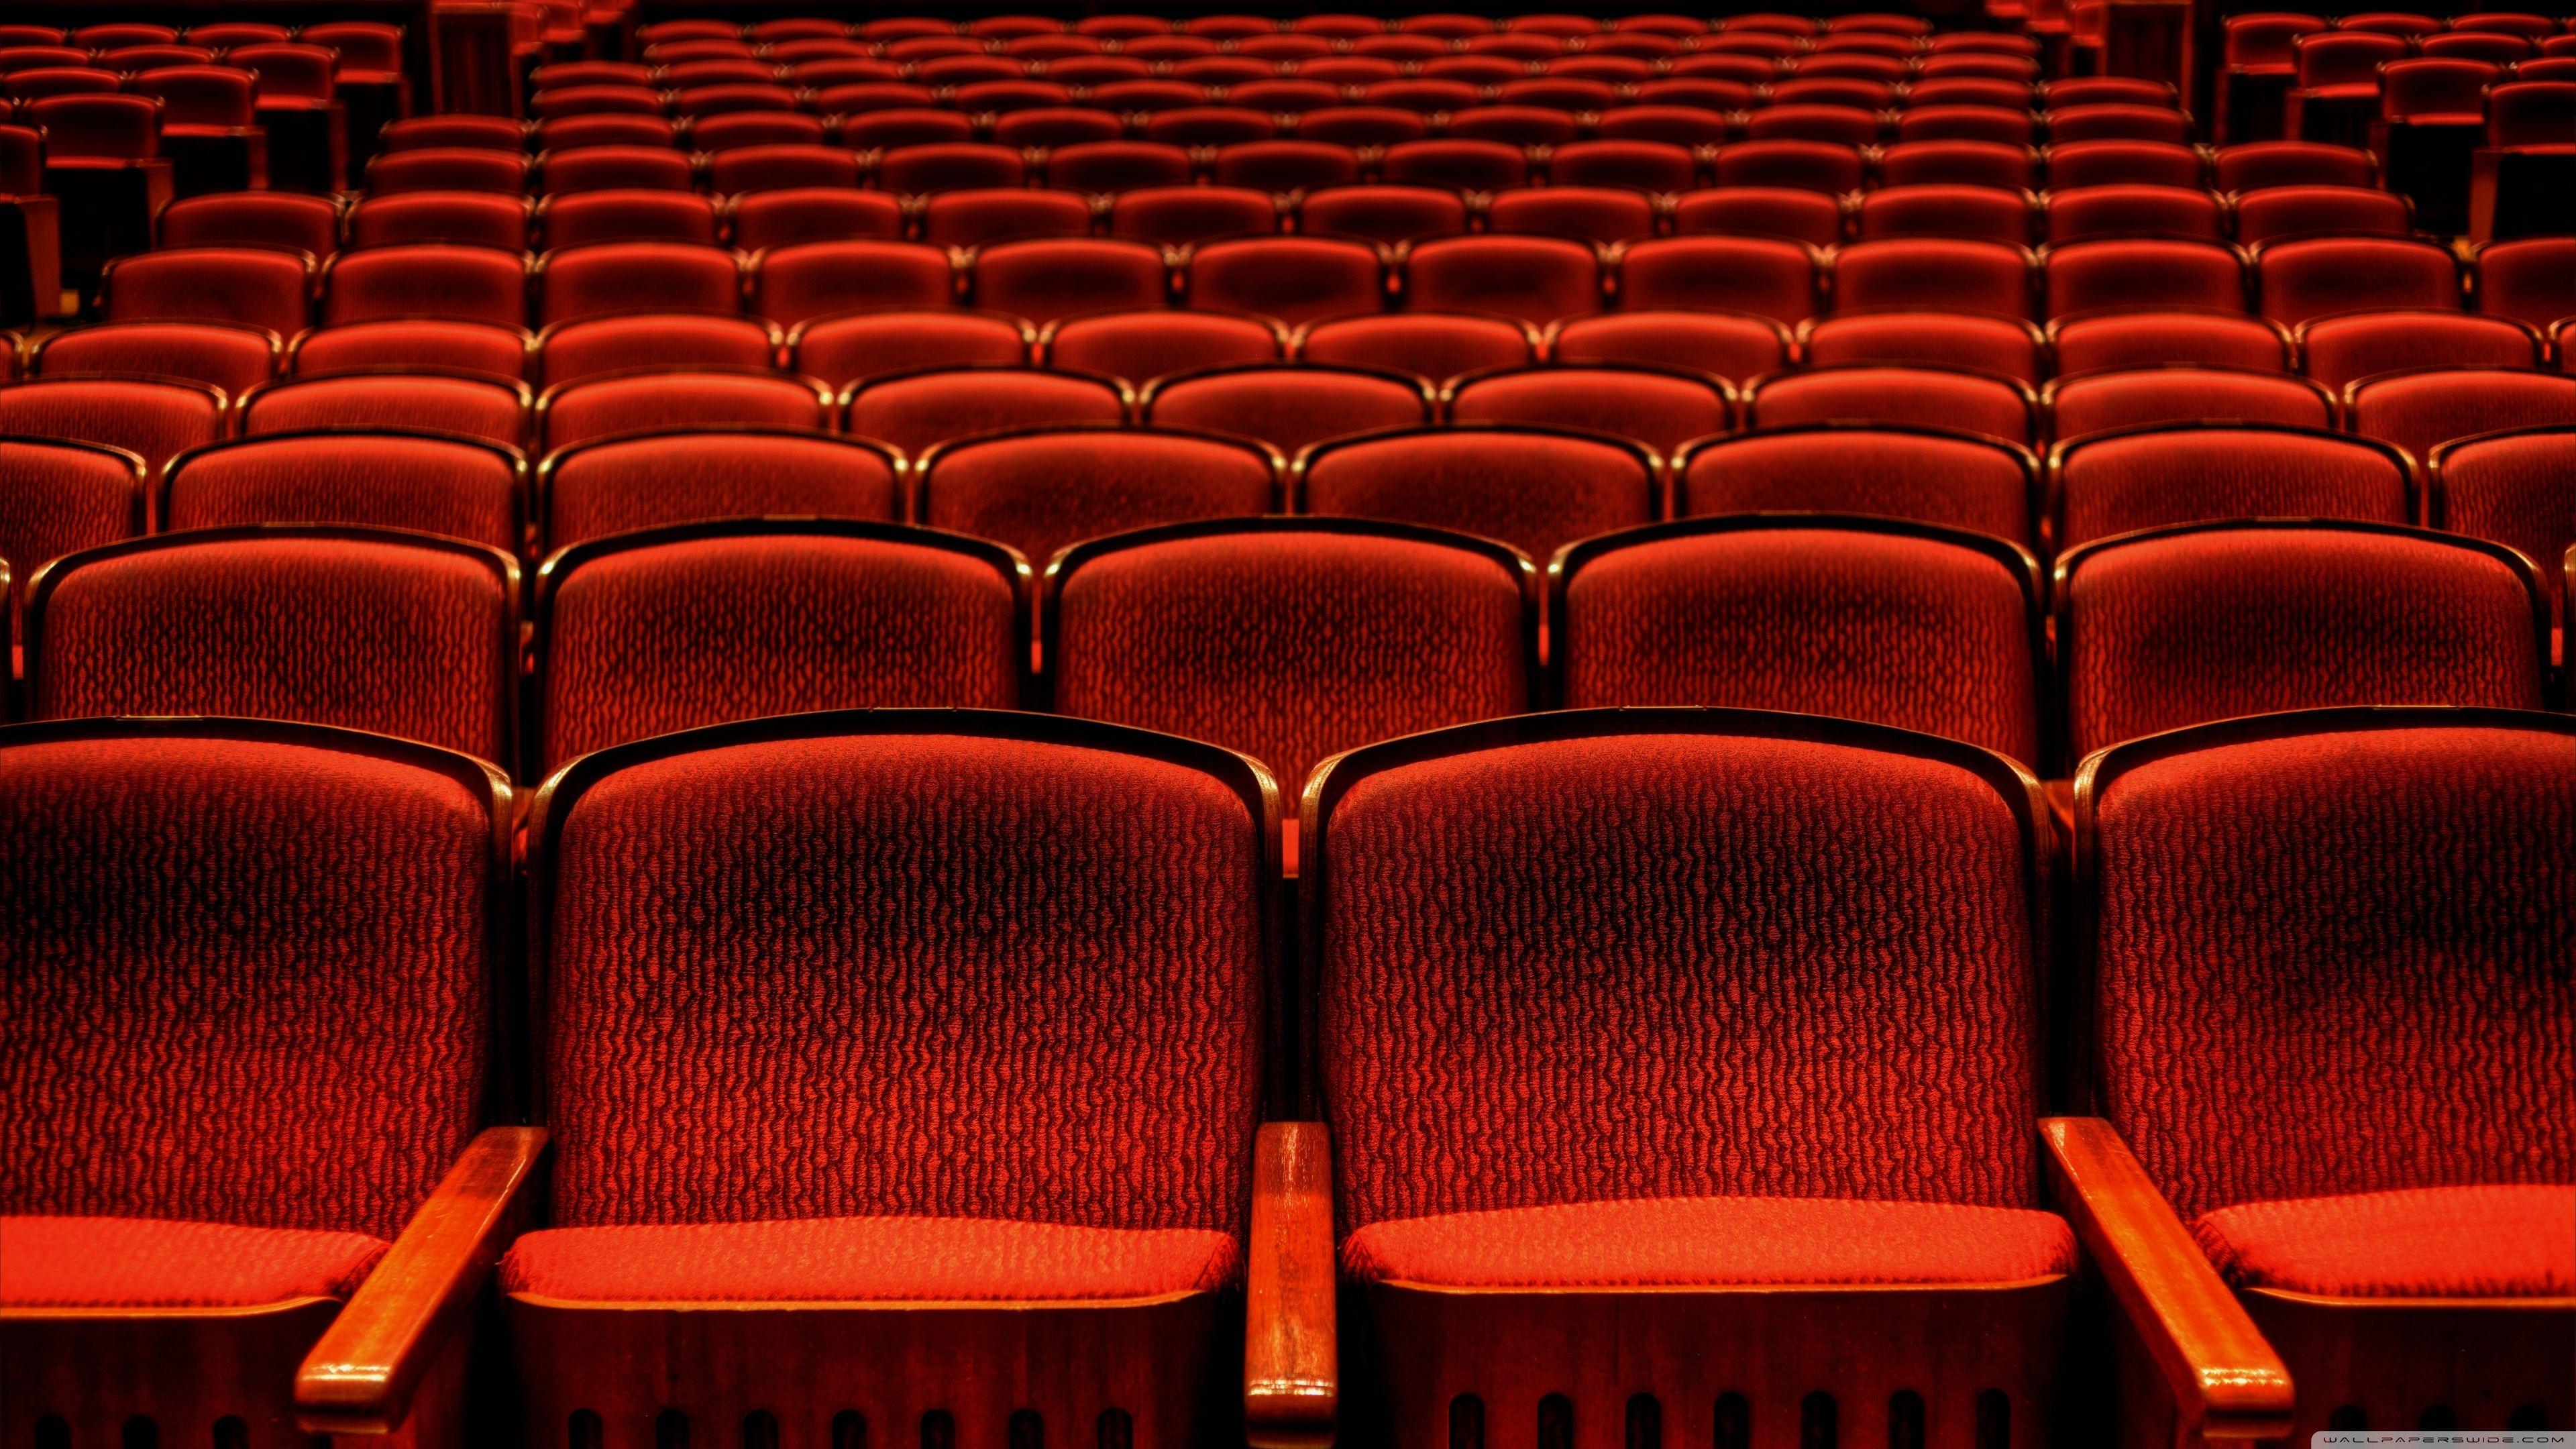 دانلود رایگان عکس از صندلی های خالی سالن تئاتر 